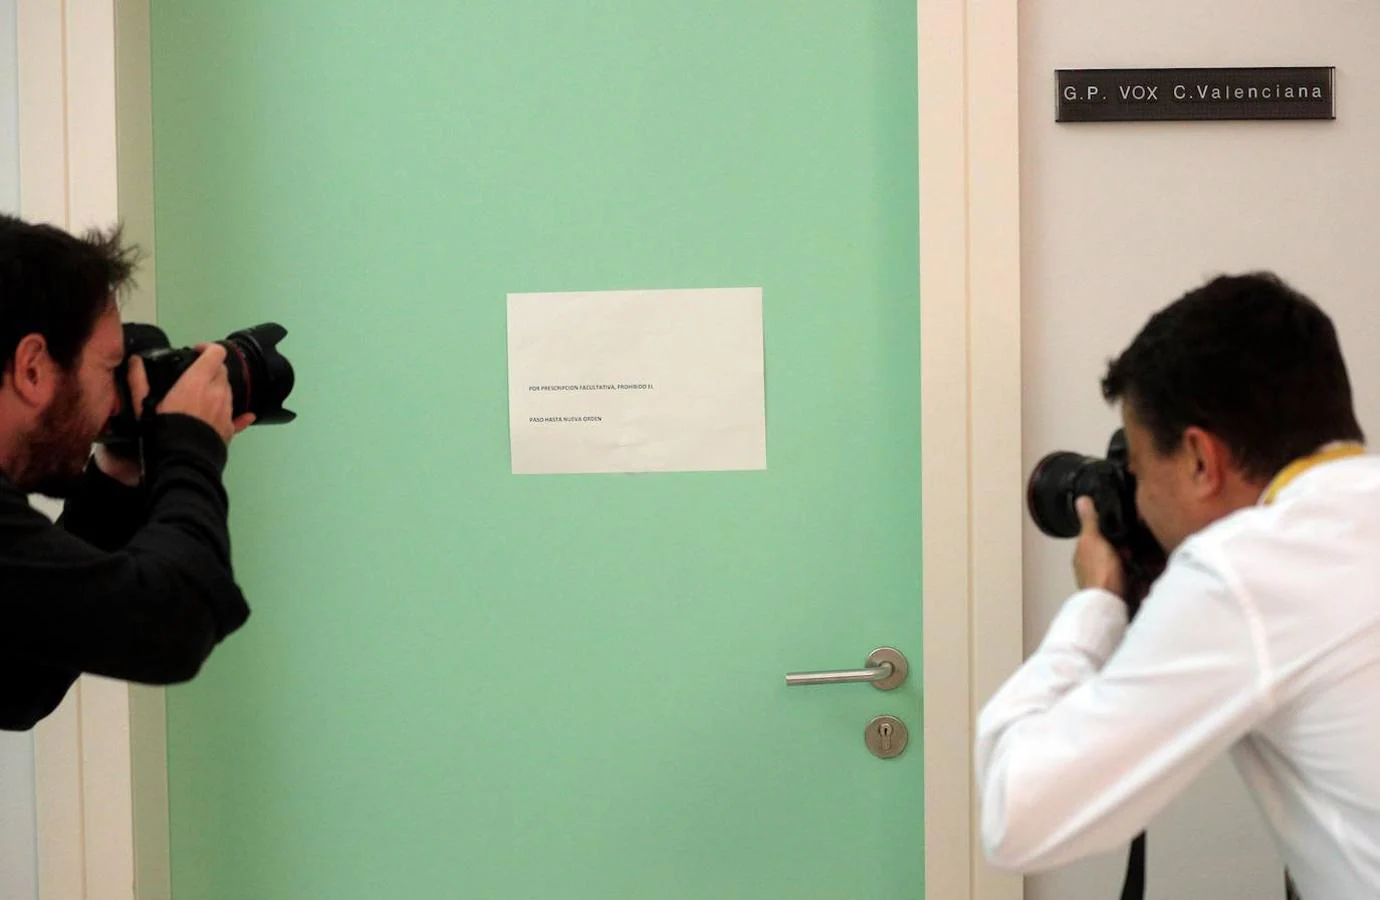 Dos fotógrafos toman una imagen de la puerta del Grupo Parlamentario de VOX en Les Corts Valencianes en cuya puerta se puede ver una cartel con el lema "Por prescripción facultativa, prohibido el paso hasta nueva orden". 